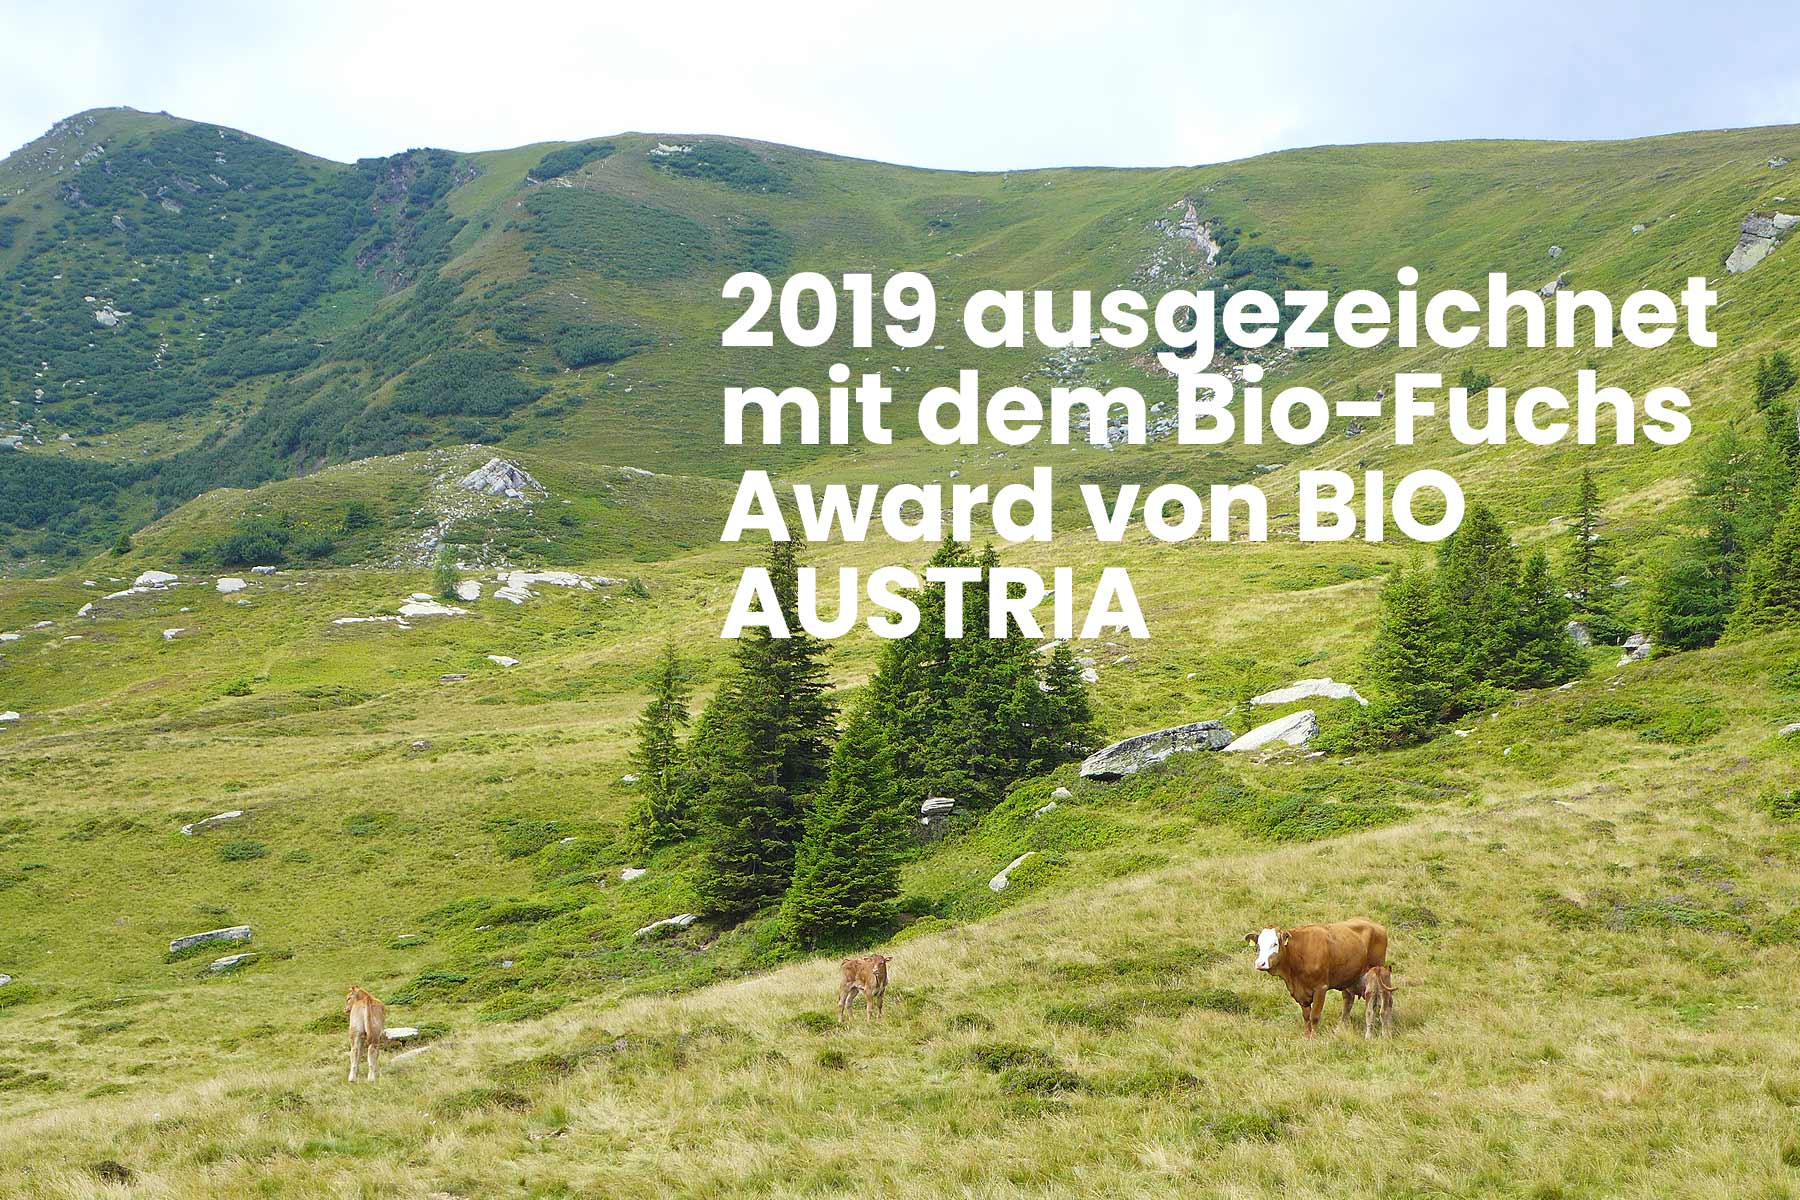 2019 ausgezeichnet mit dem Bio-Fuchs Award von Bio Austria